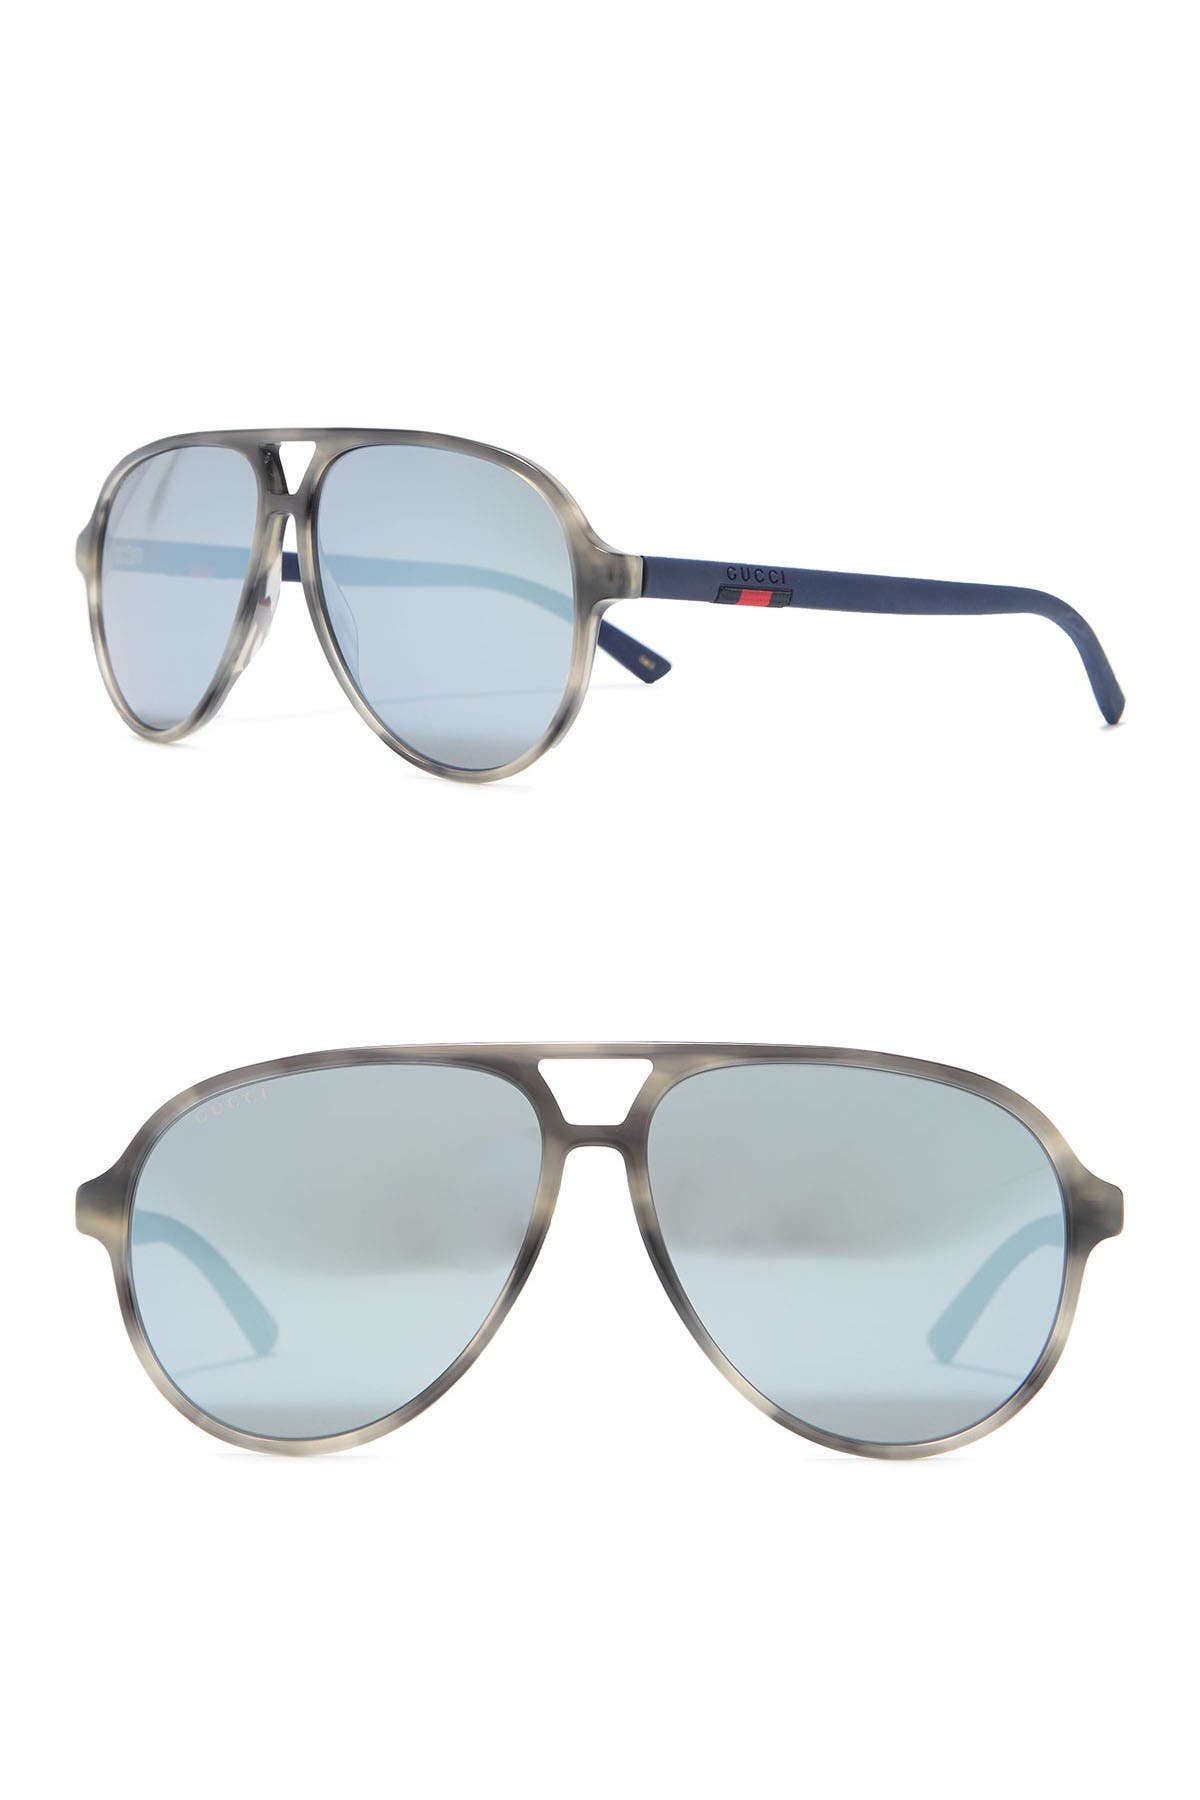 Gucci 58mm Core Aviator Sunglasses In Havana Blue Grey